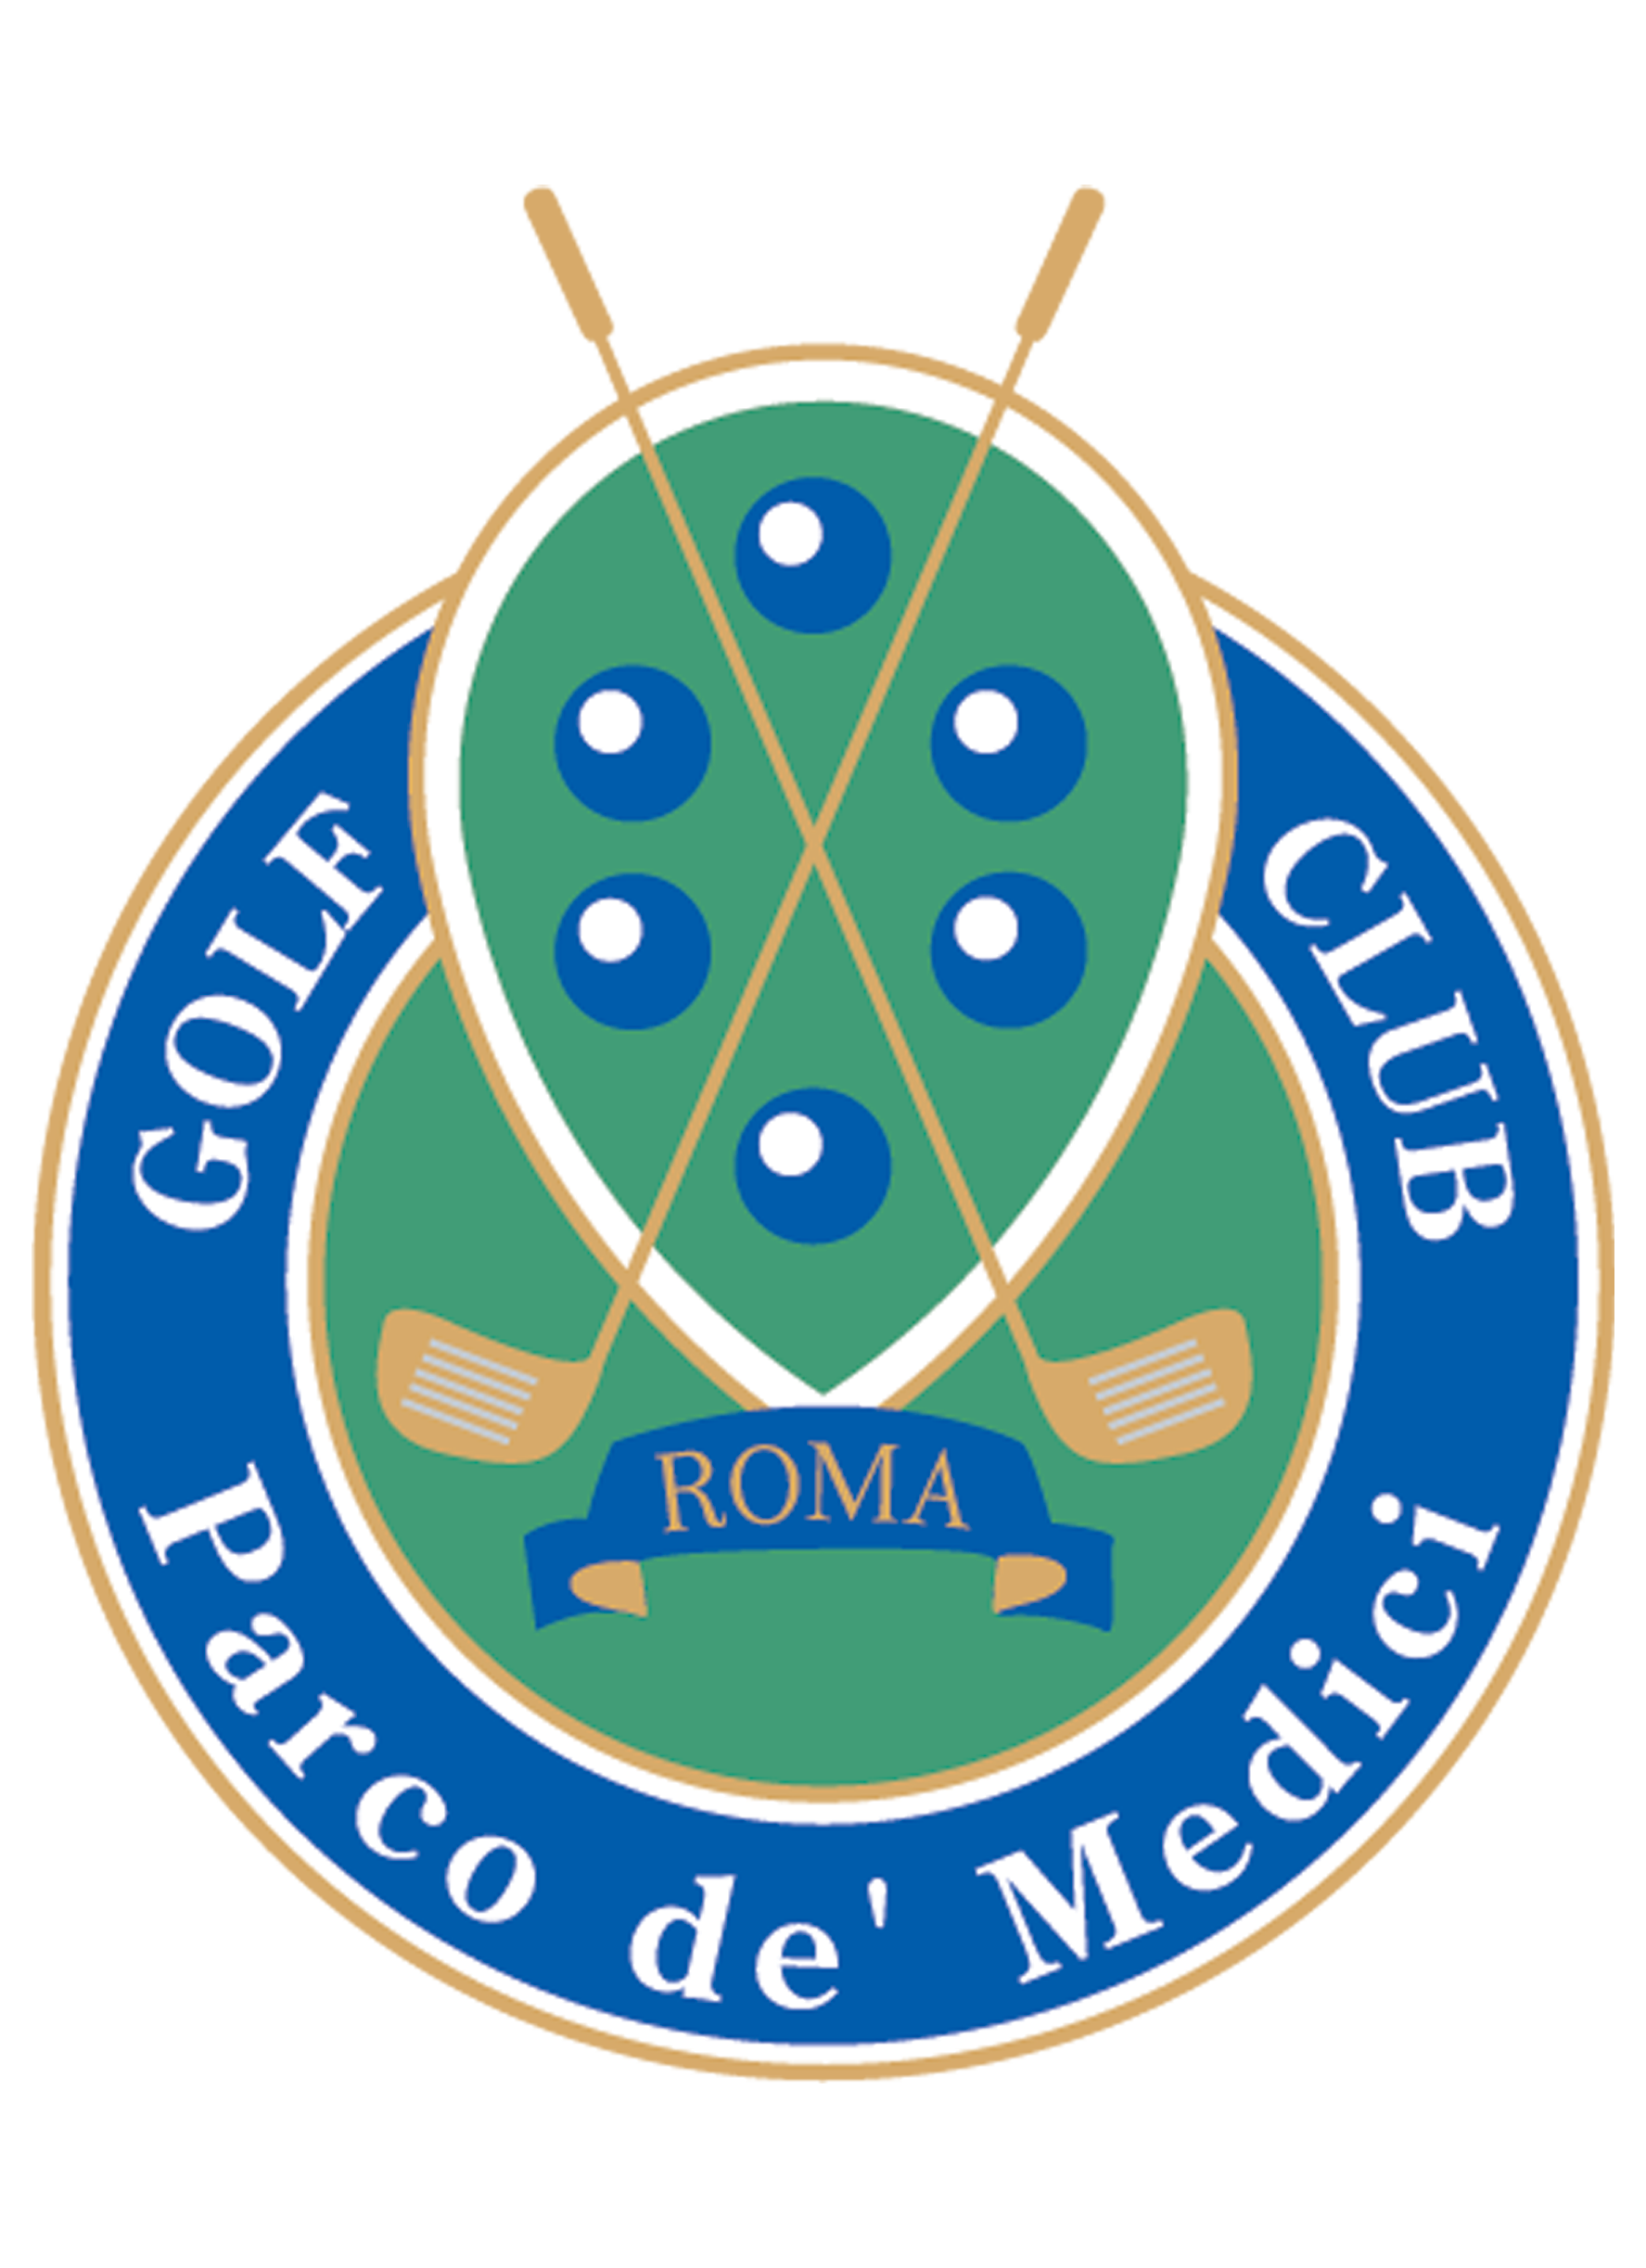 Golf Parco de Medici